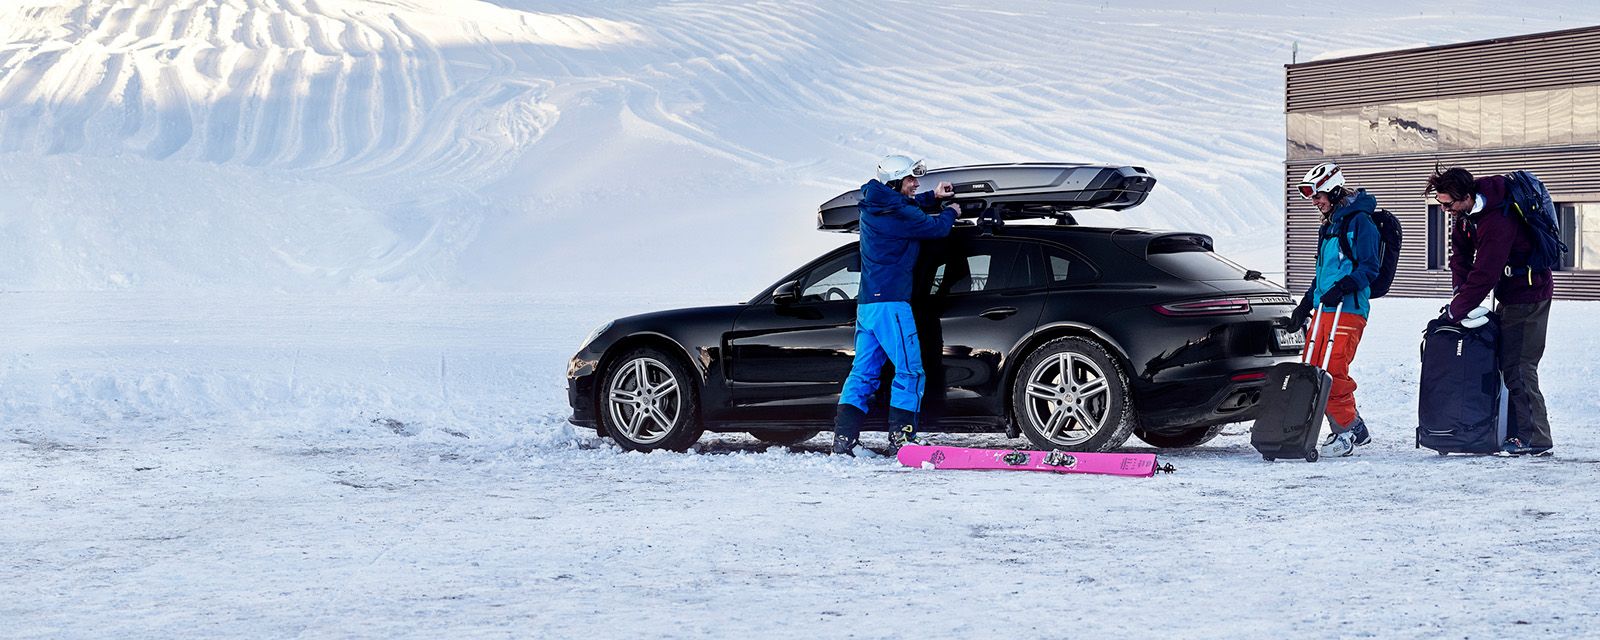 Dvoje ljudi u snijegu sa skijaškom opremom tovare svoje stvari u automobil i krovnu kutiju za teret.